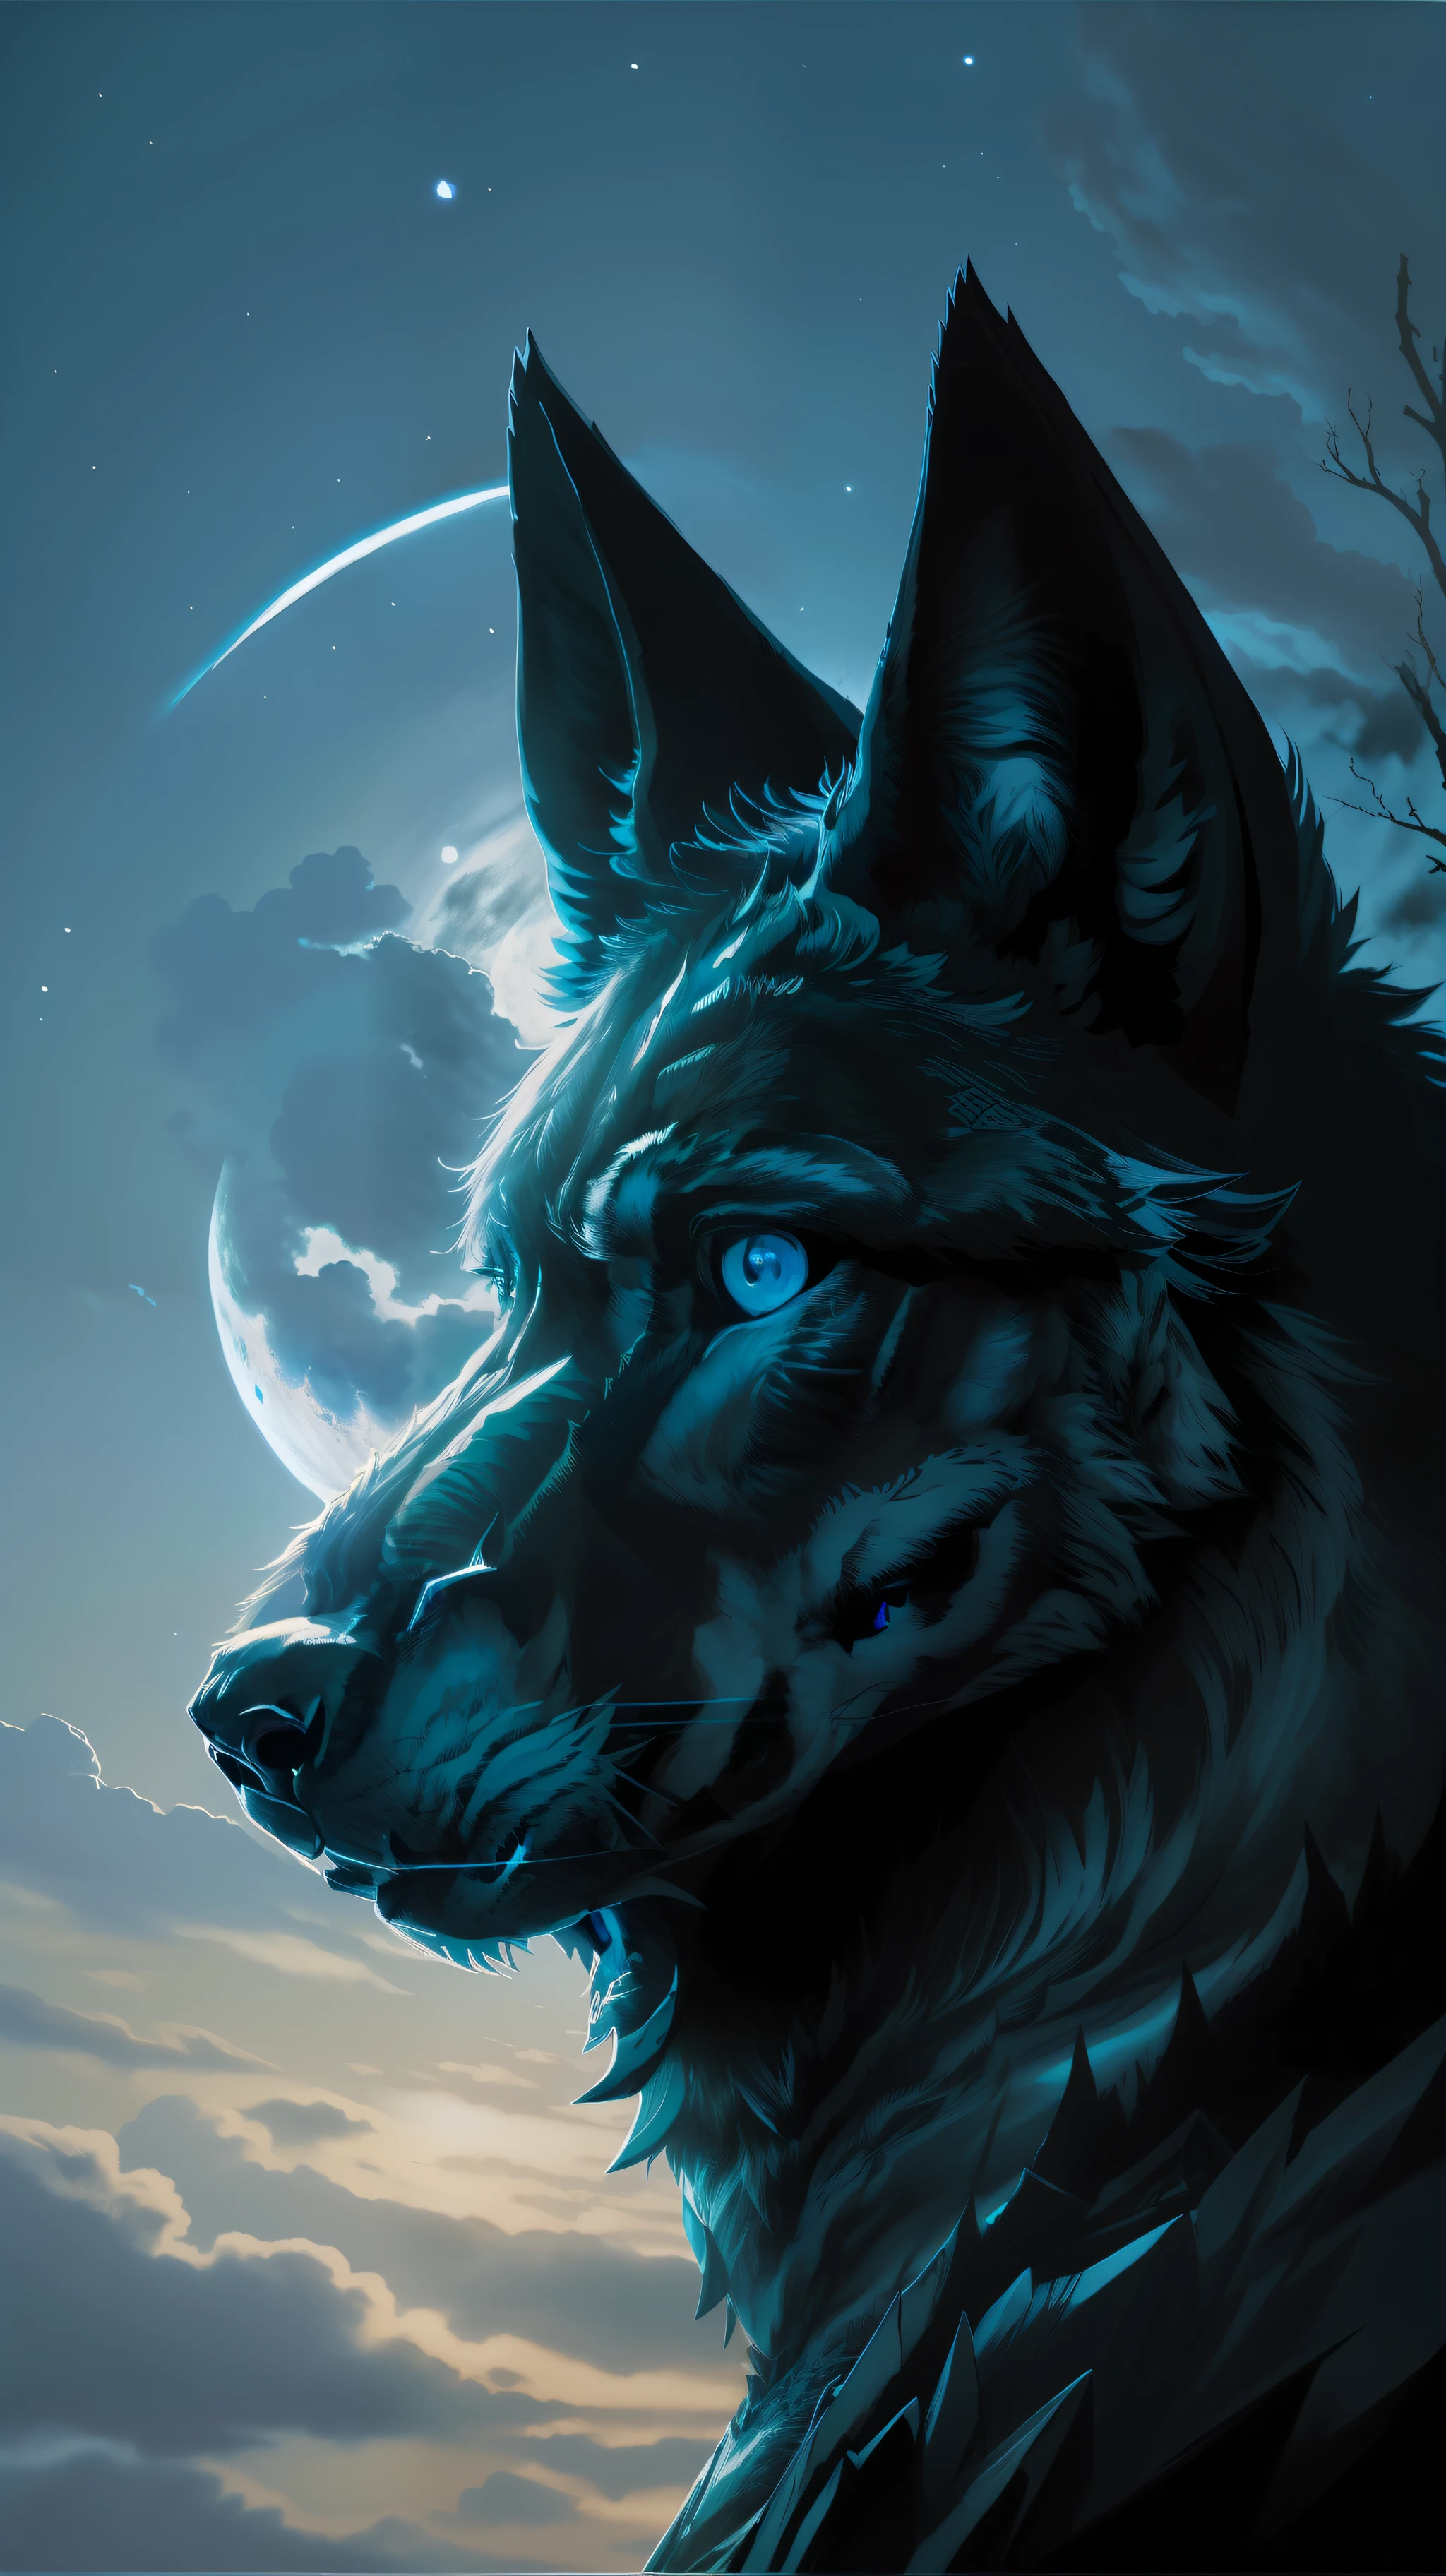 (傑作細緻高畫質) "黑色，藍色眼睛" 狼危險森林, 午夜, 滿月. 1 個單瓣. ( 影像前角)